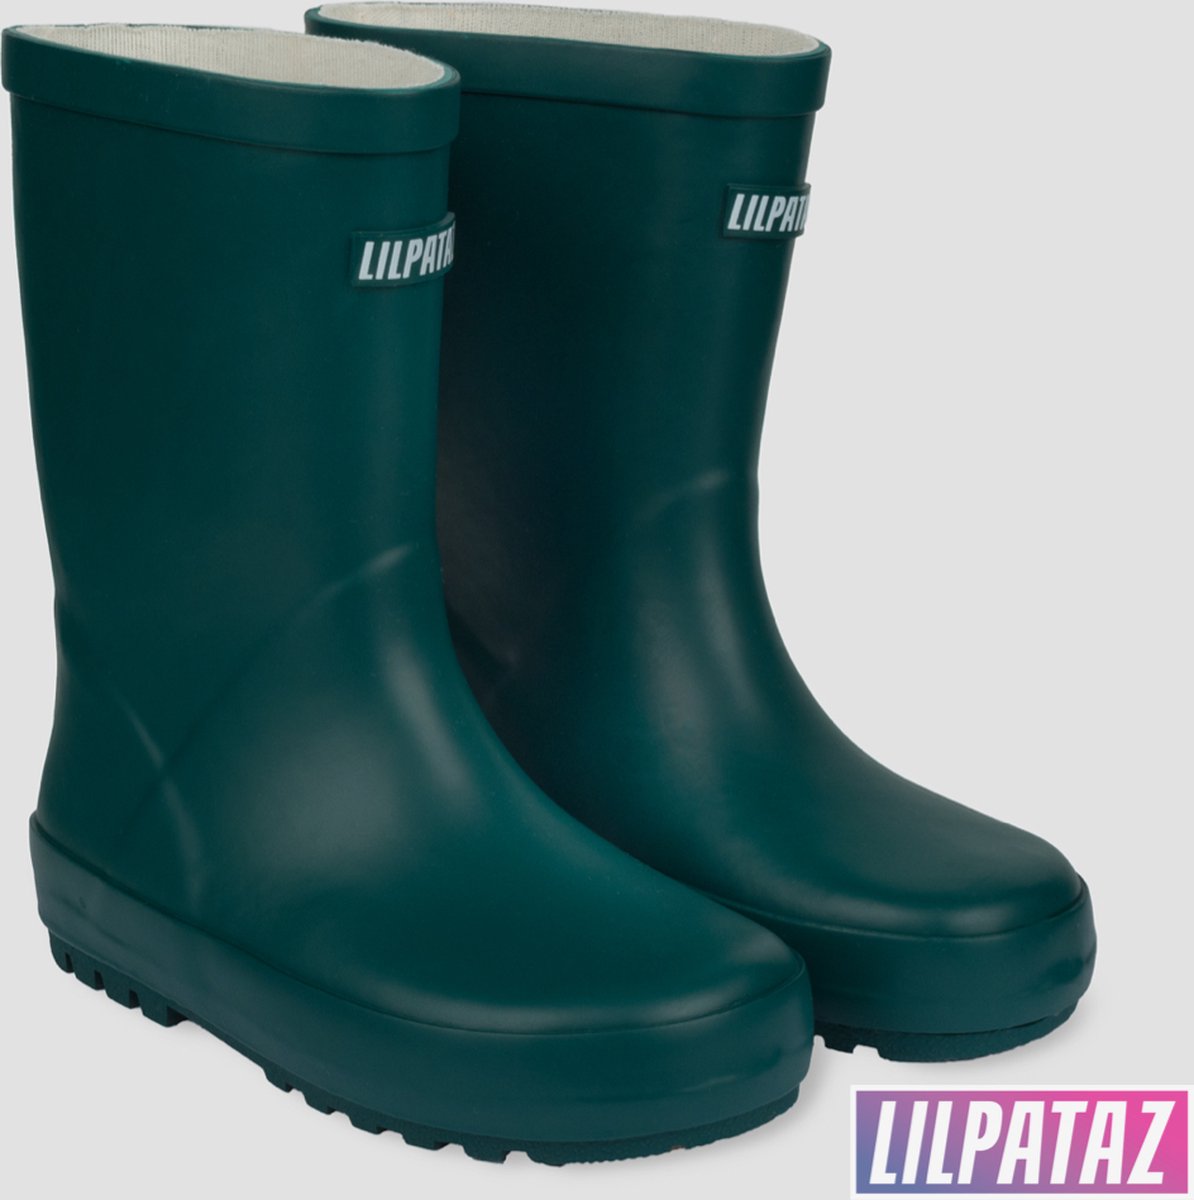 LilPataz Rainboot - Regenlaars kinderen - Jongens Meisjes - Groen - kinder regenlaarzen - Maat 24